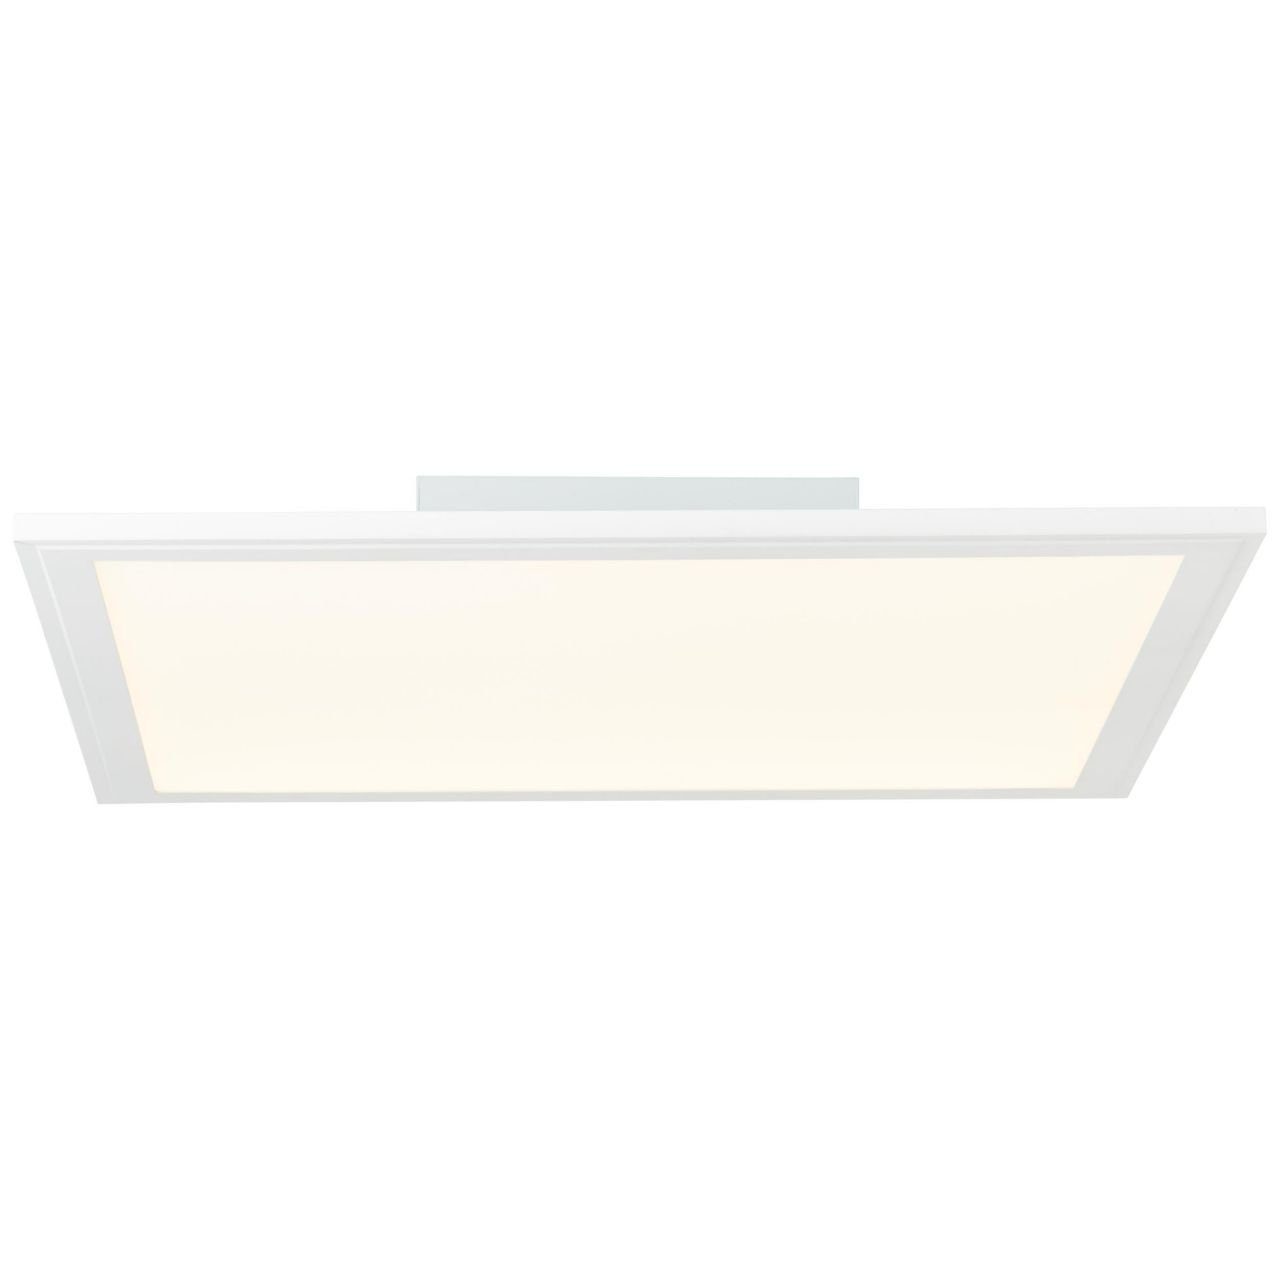 Brilliant Deckenleuchte Abie, RGB Abie weiß 40x40cm LED 1x Deckenaufbau-Paneel integ 2700-6200K, 24W Lampe LED